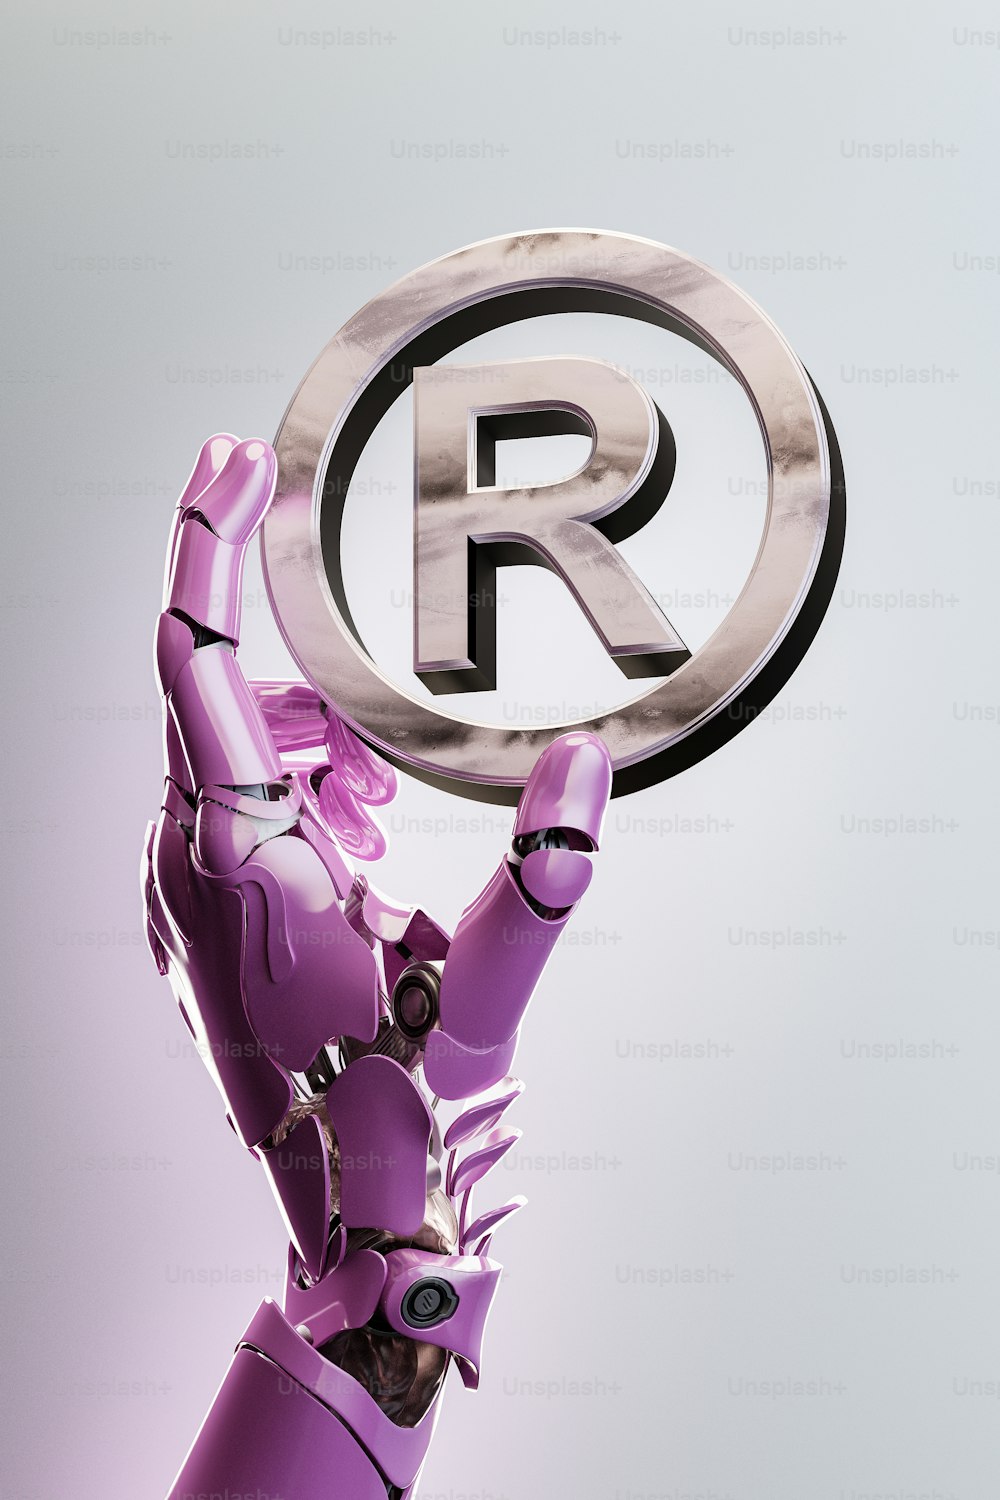 Rの文字が書かれた看板を掲げるロボット